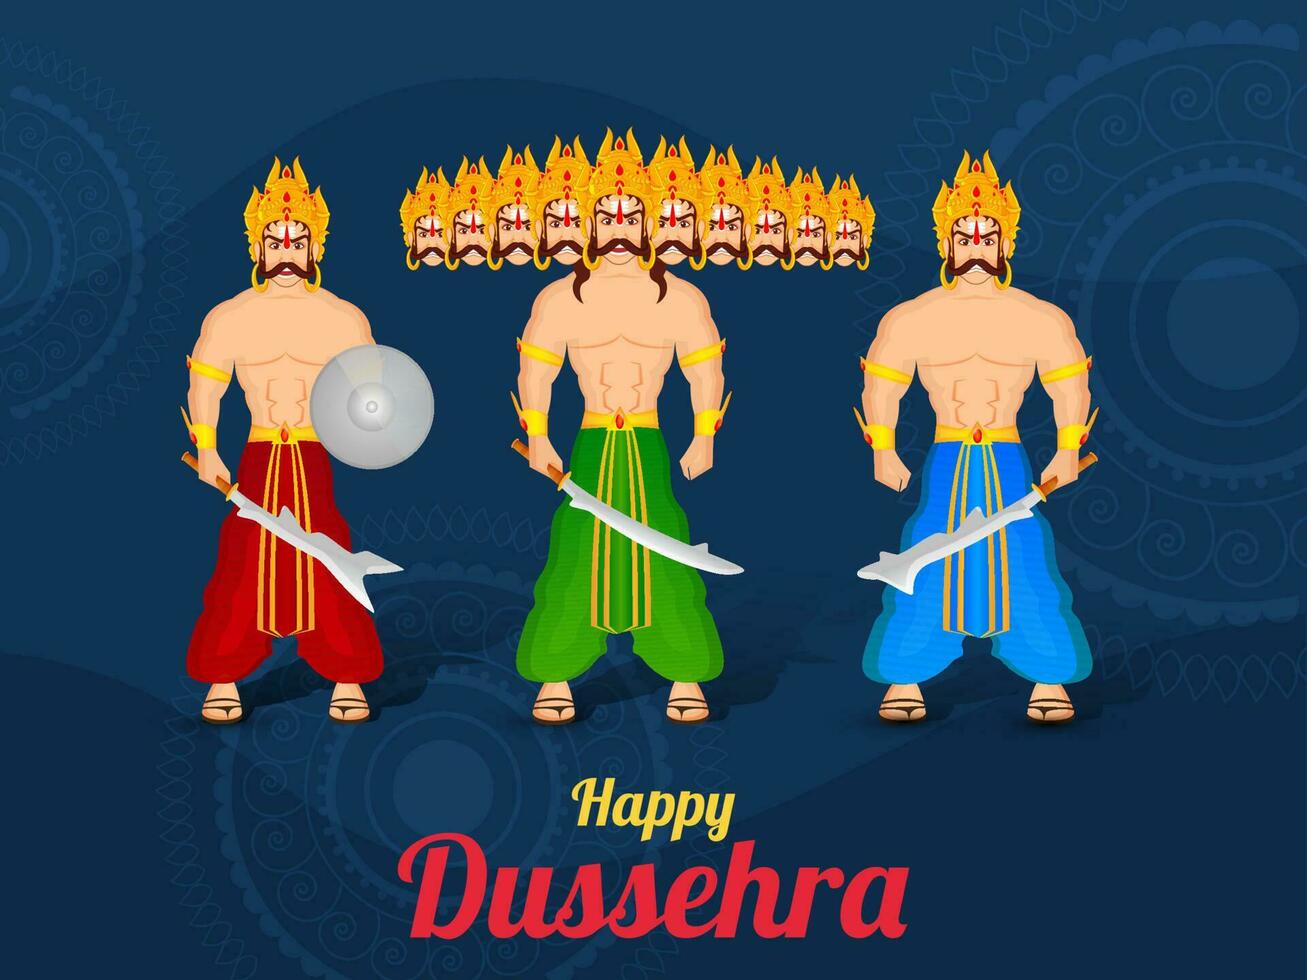 Hindu mythologisch Dämon König Ravana mit seine Bruder Kumbhkarana und Sohn meghnad Stehen zusammen auf das Gelegenheit von Dussehra Festival. vektor